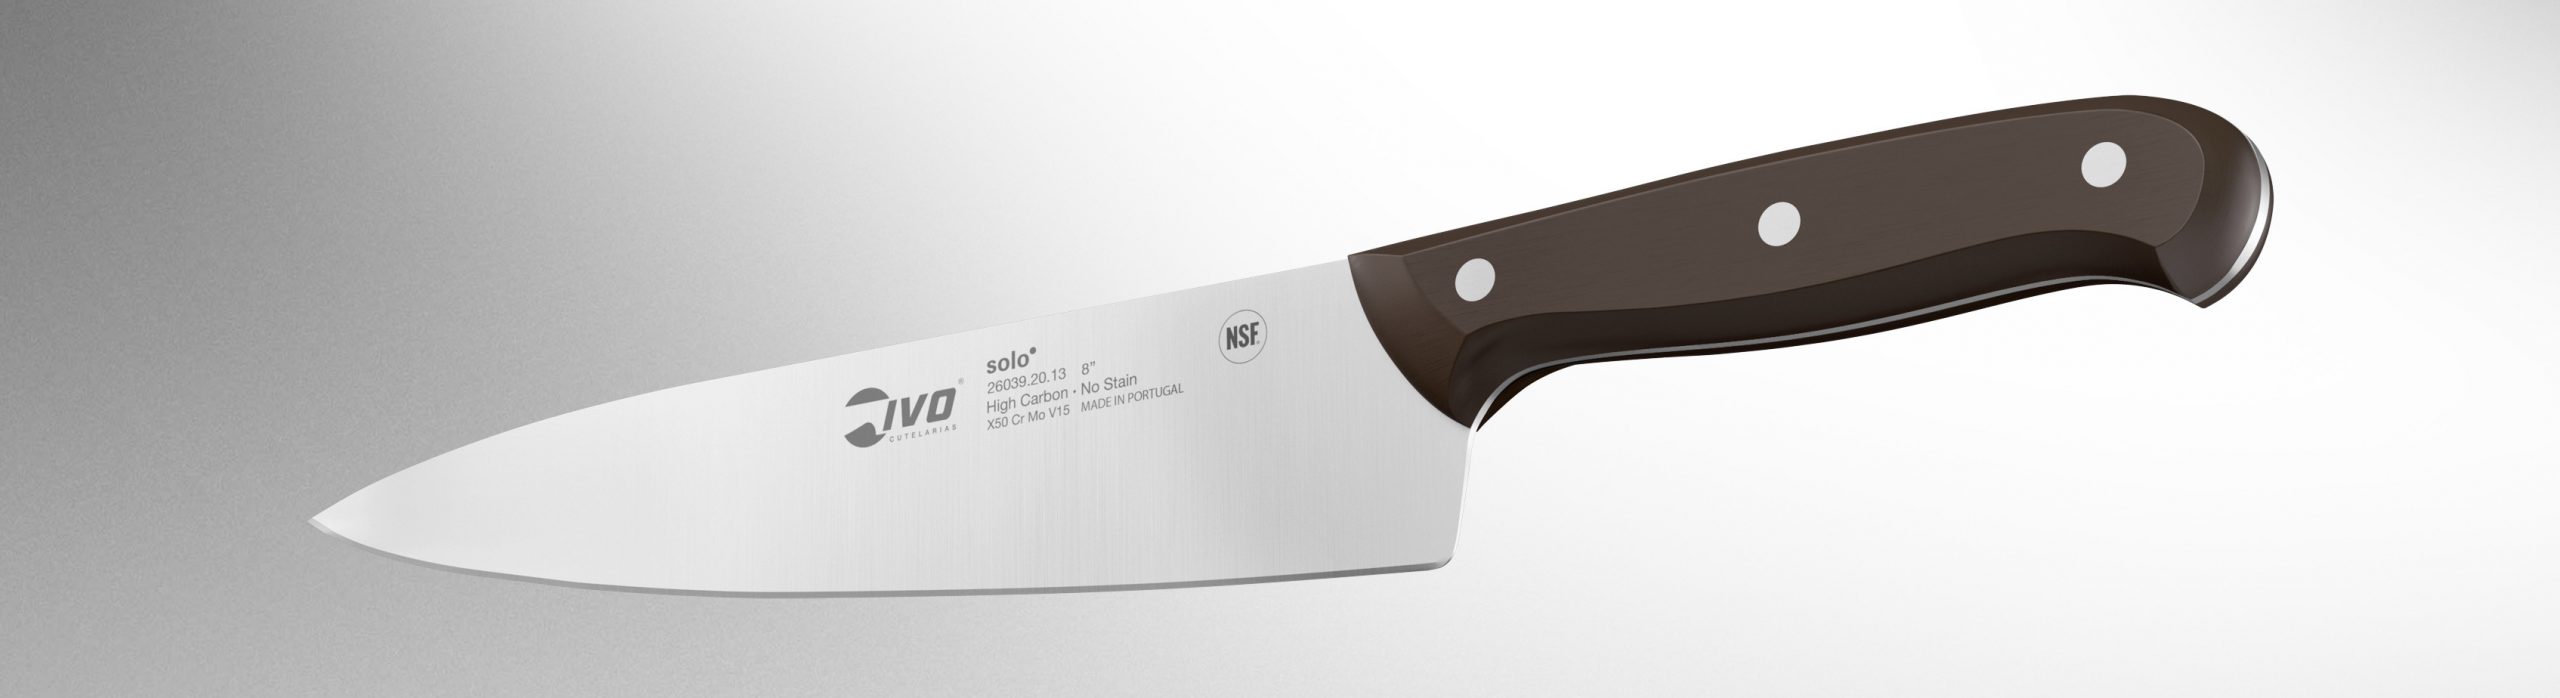 Ivo Cutlery Solo 4 Piece Steak Knife Set